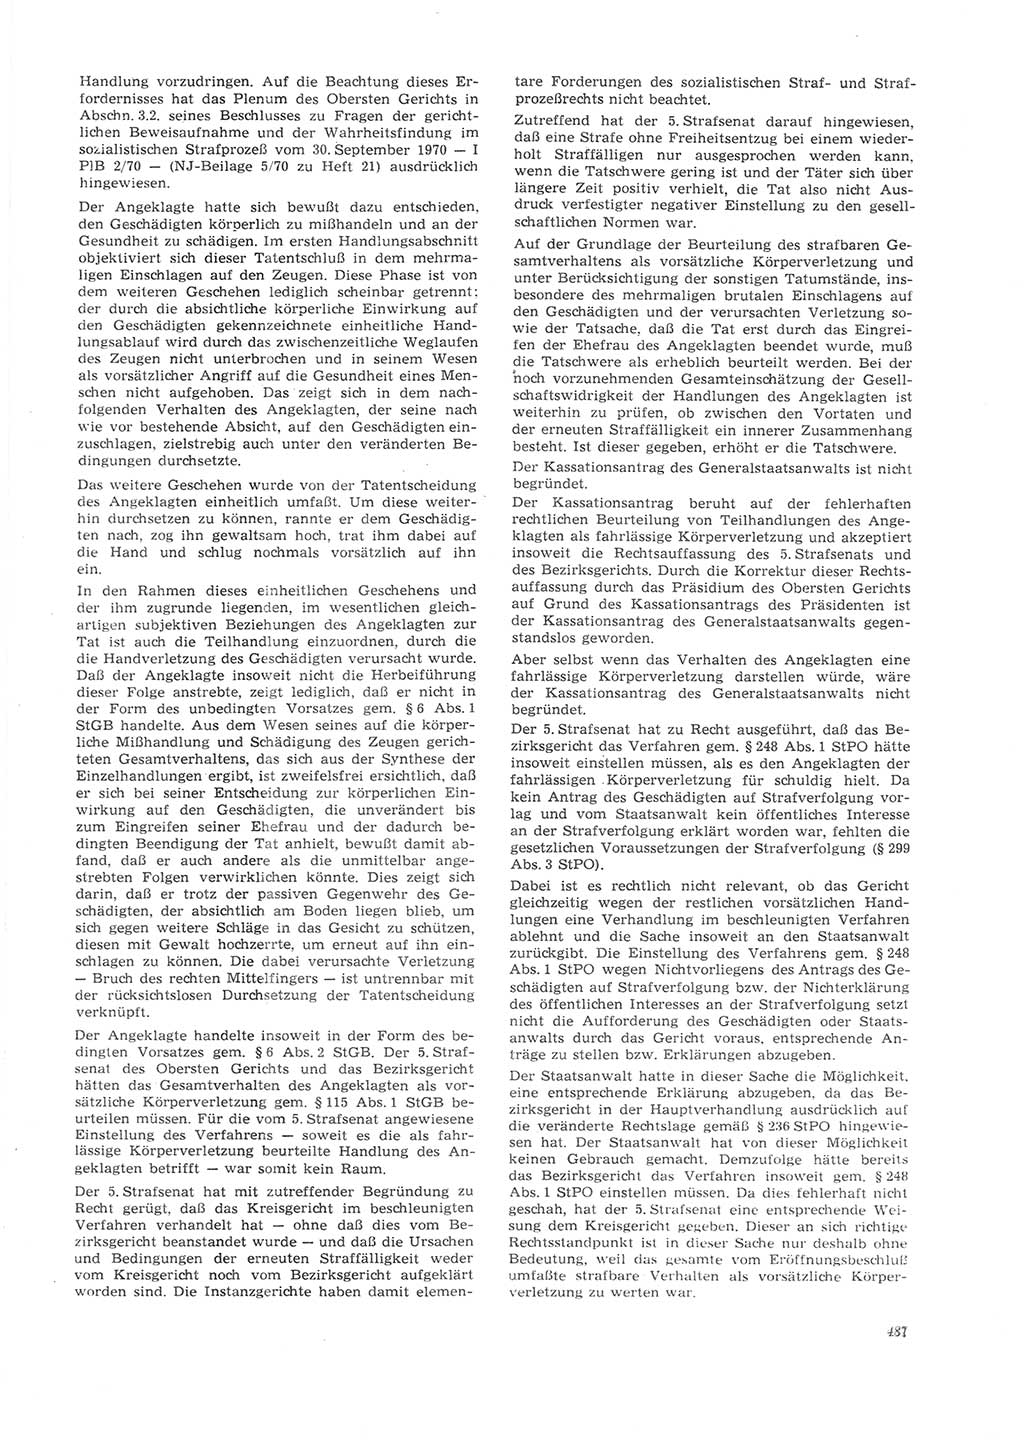 Neue Justiz (NJ), Zeitschrift für Recht und Rechtswissenschaft [Deutsche Demokratische Republik (DDR)], 26. Jahrgang 1972, Seite 487 (NJ DDR 1972, S. 487)